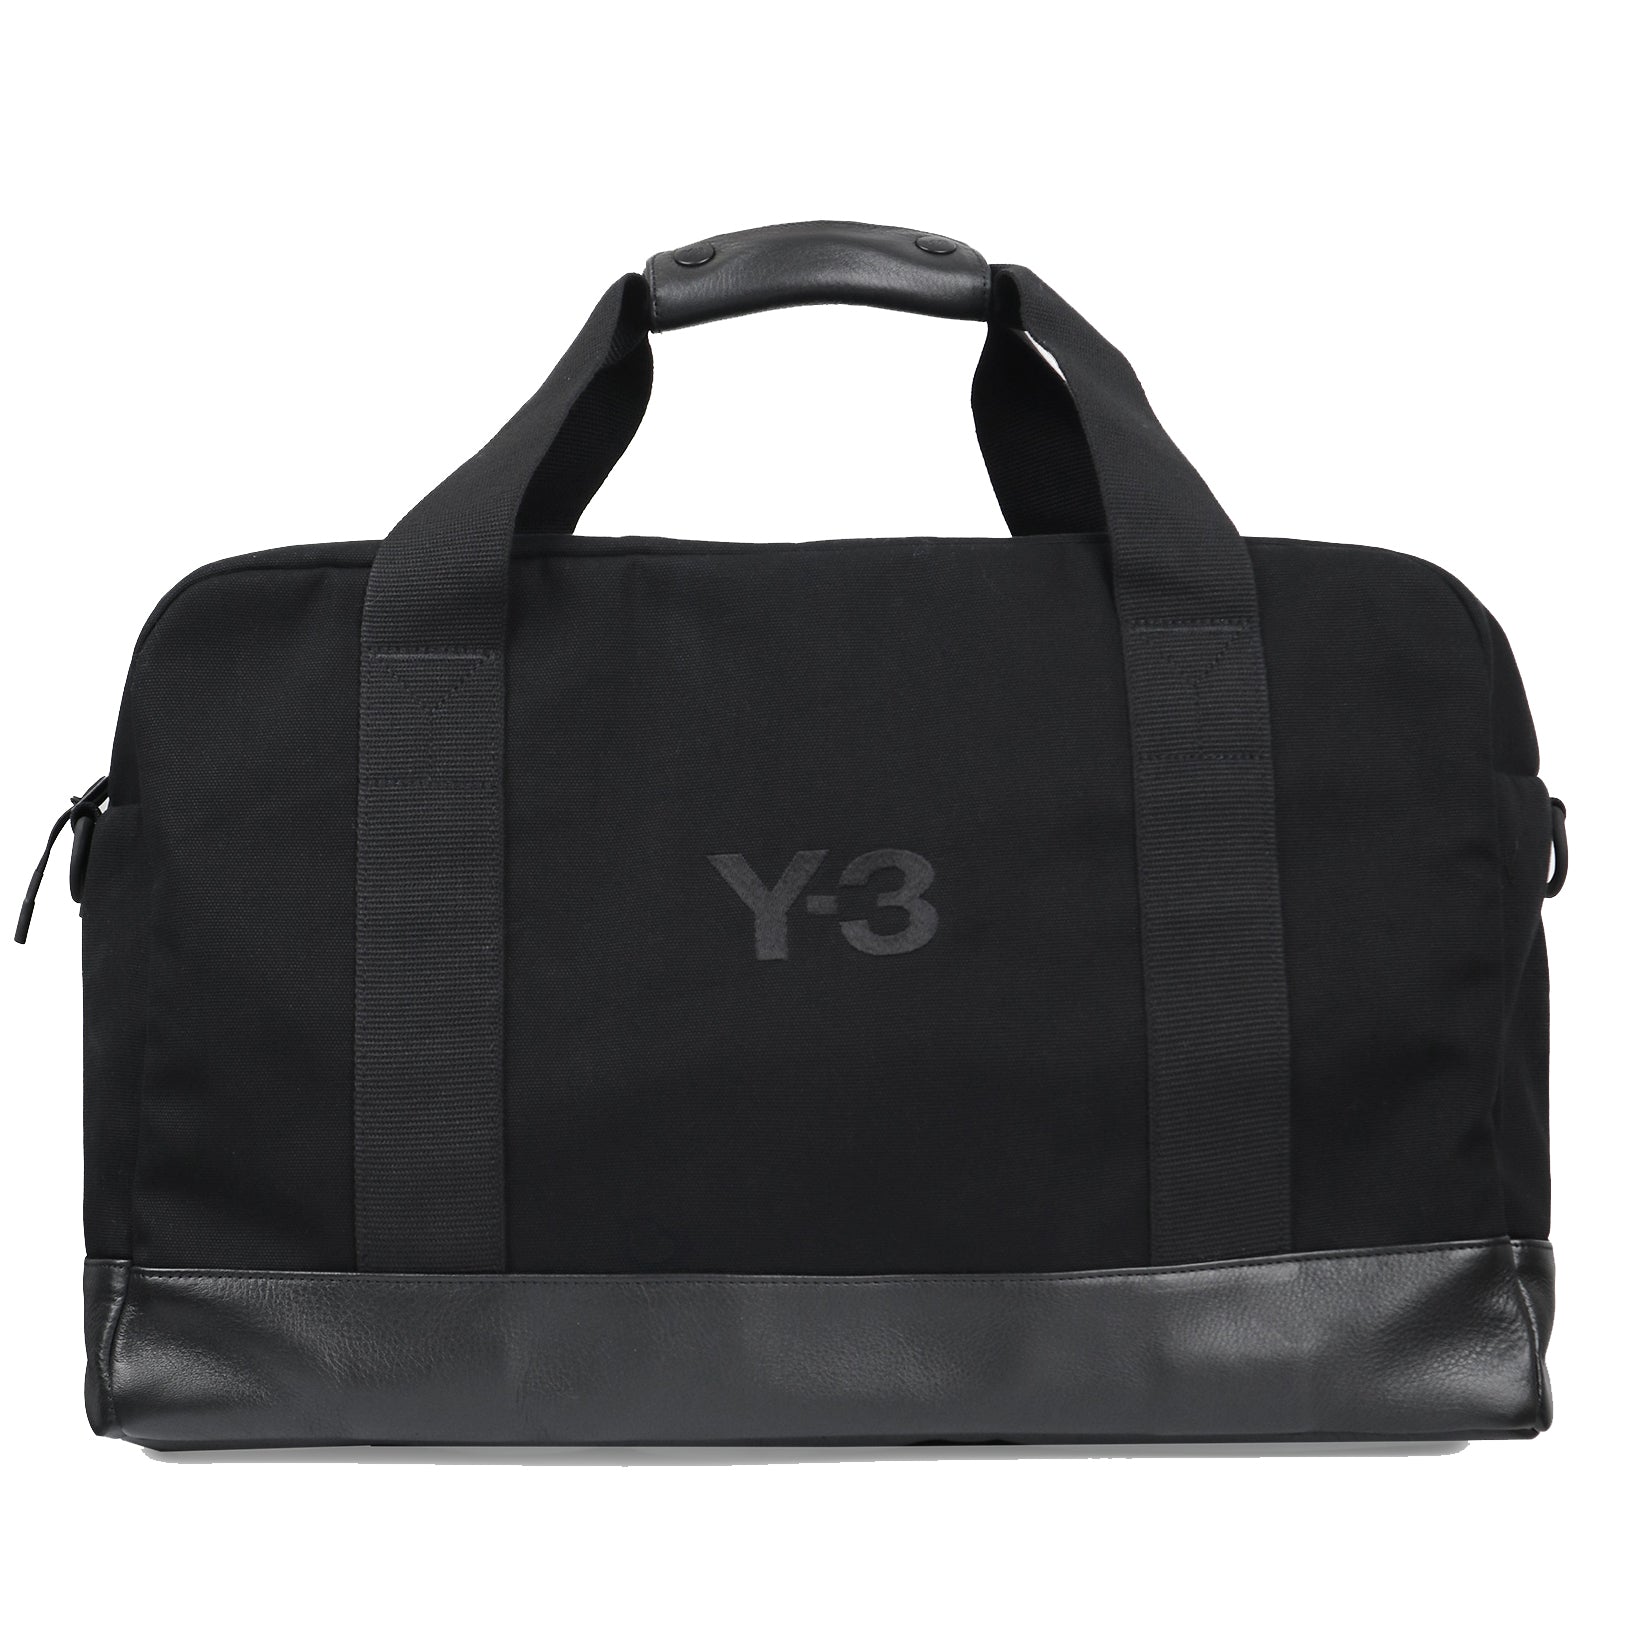 Y-3 Men's Weekender Bag Black - ONE SIZE BLACK